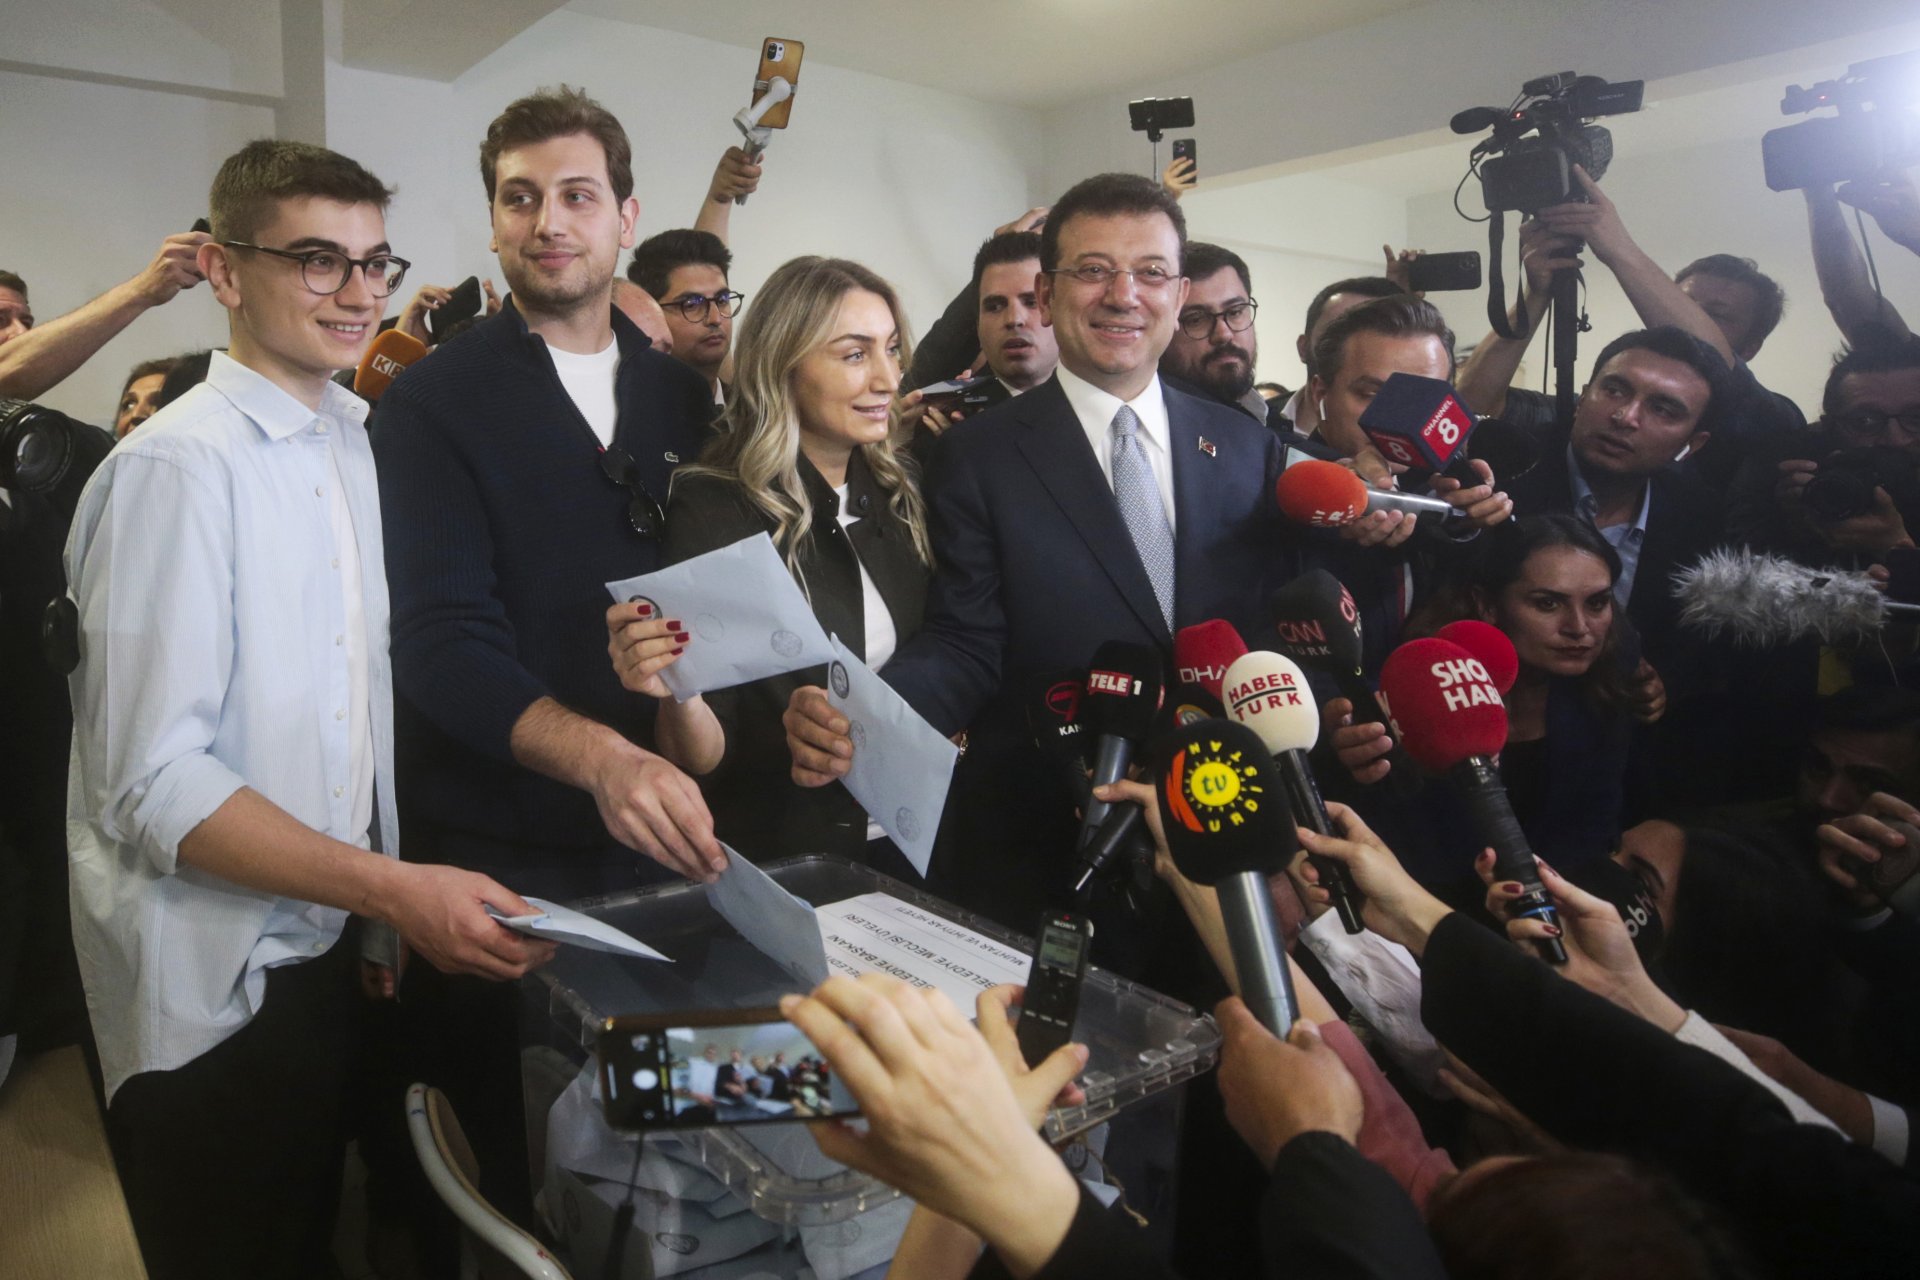  Кметът на Истанбул и Републиканската национална партия, или CHP, Екрем Имамоглу, вдясно, брачната половинка му Дилек Имамоглу и синовете гласоподаваха в изборна секция в Истанбул 